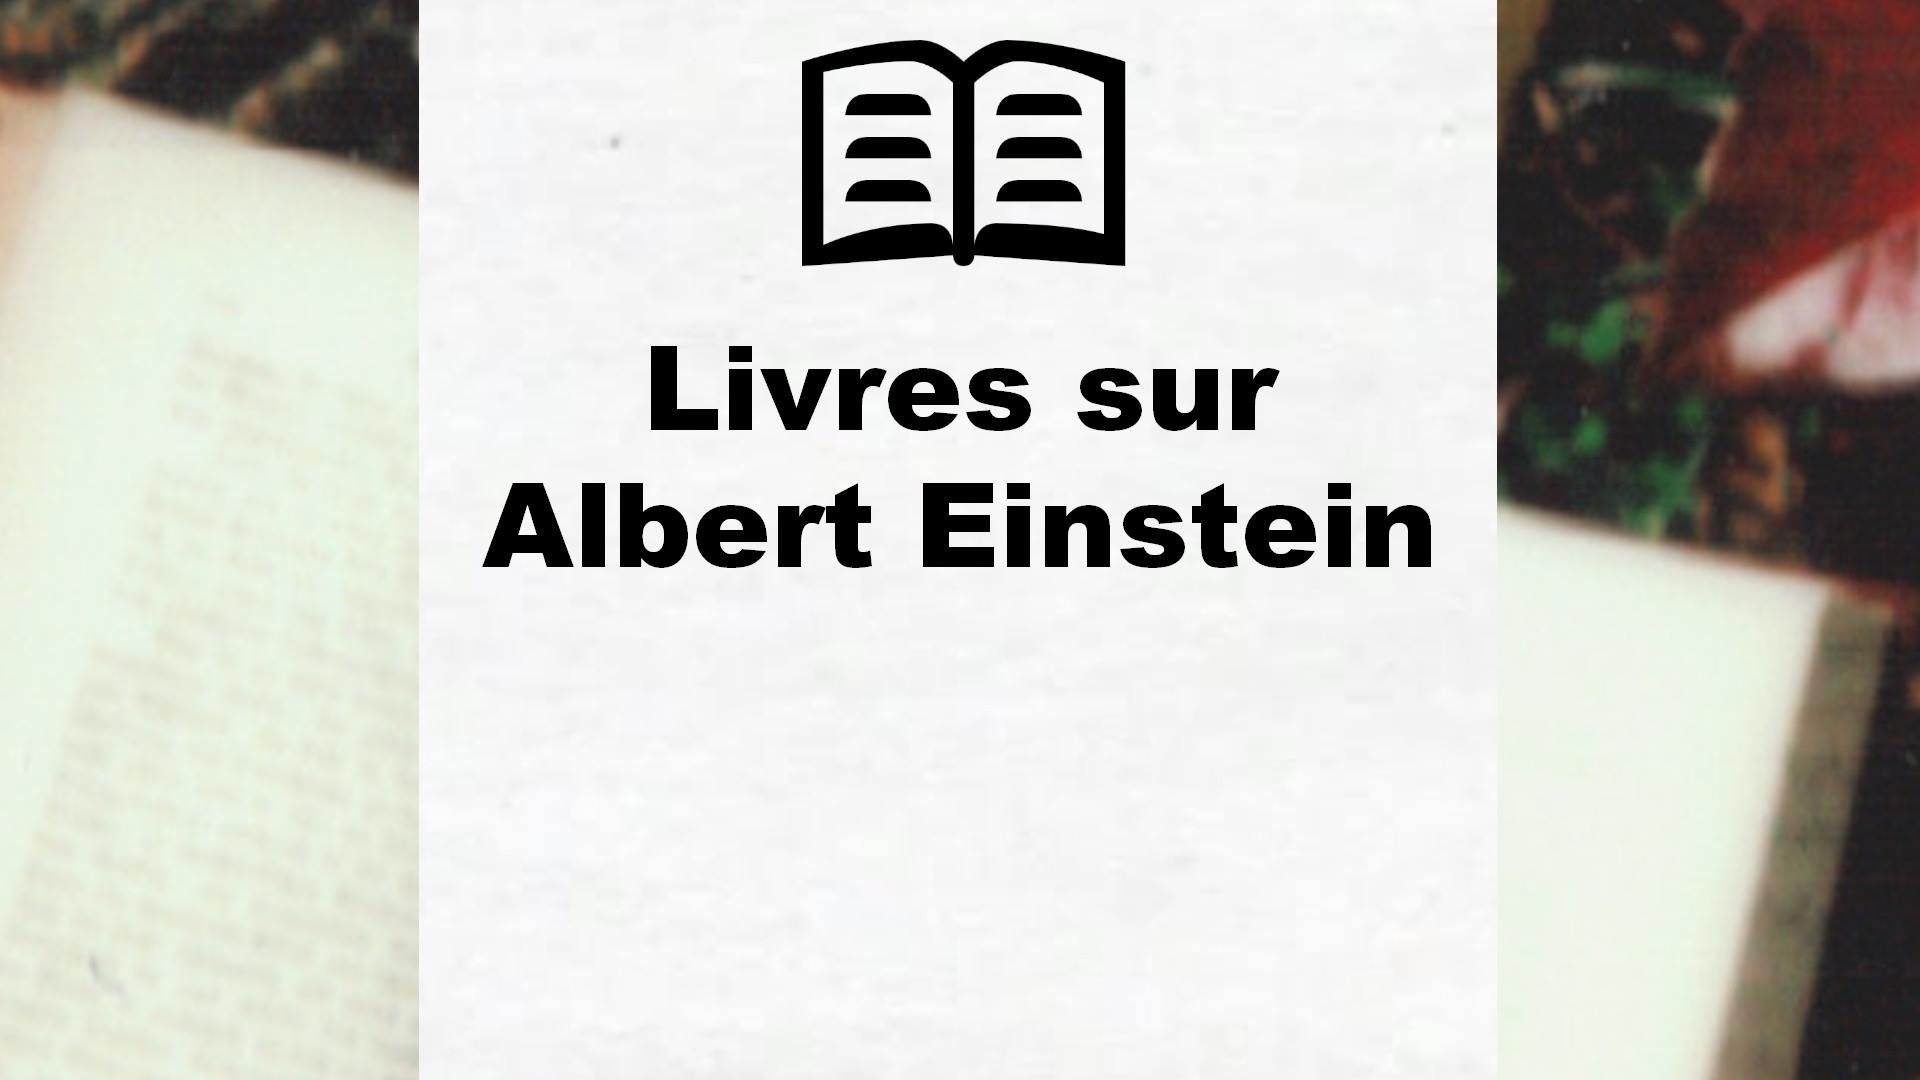 Livres sur Albert Einstein